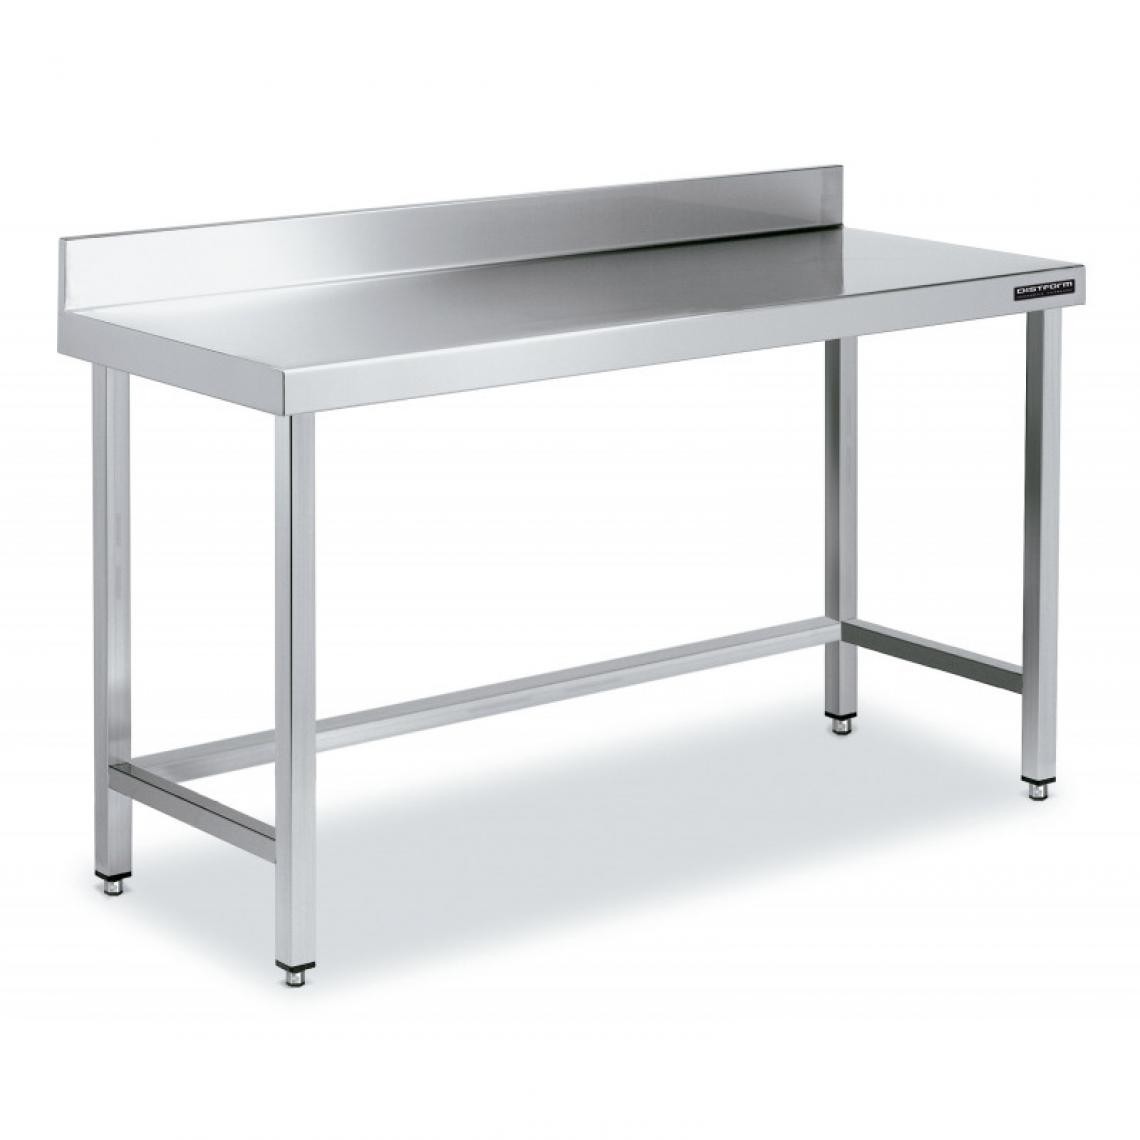 DISTFORM - Table de Travail Adossée Inox avec Renforts - Gamme 600 - Hauteur 600 - Distform - Acier inoxydable1100x600 - Tables à manger